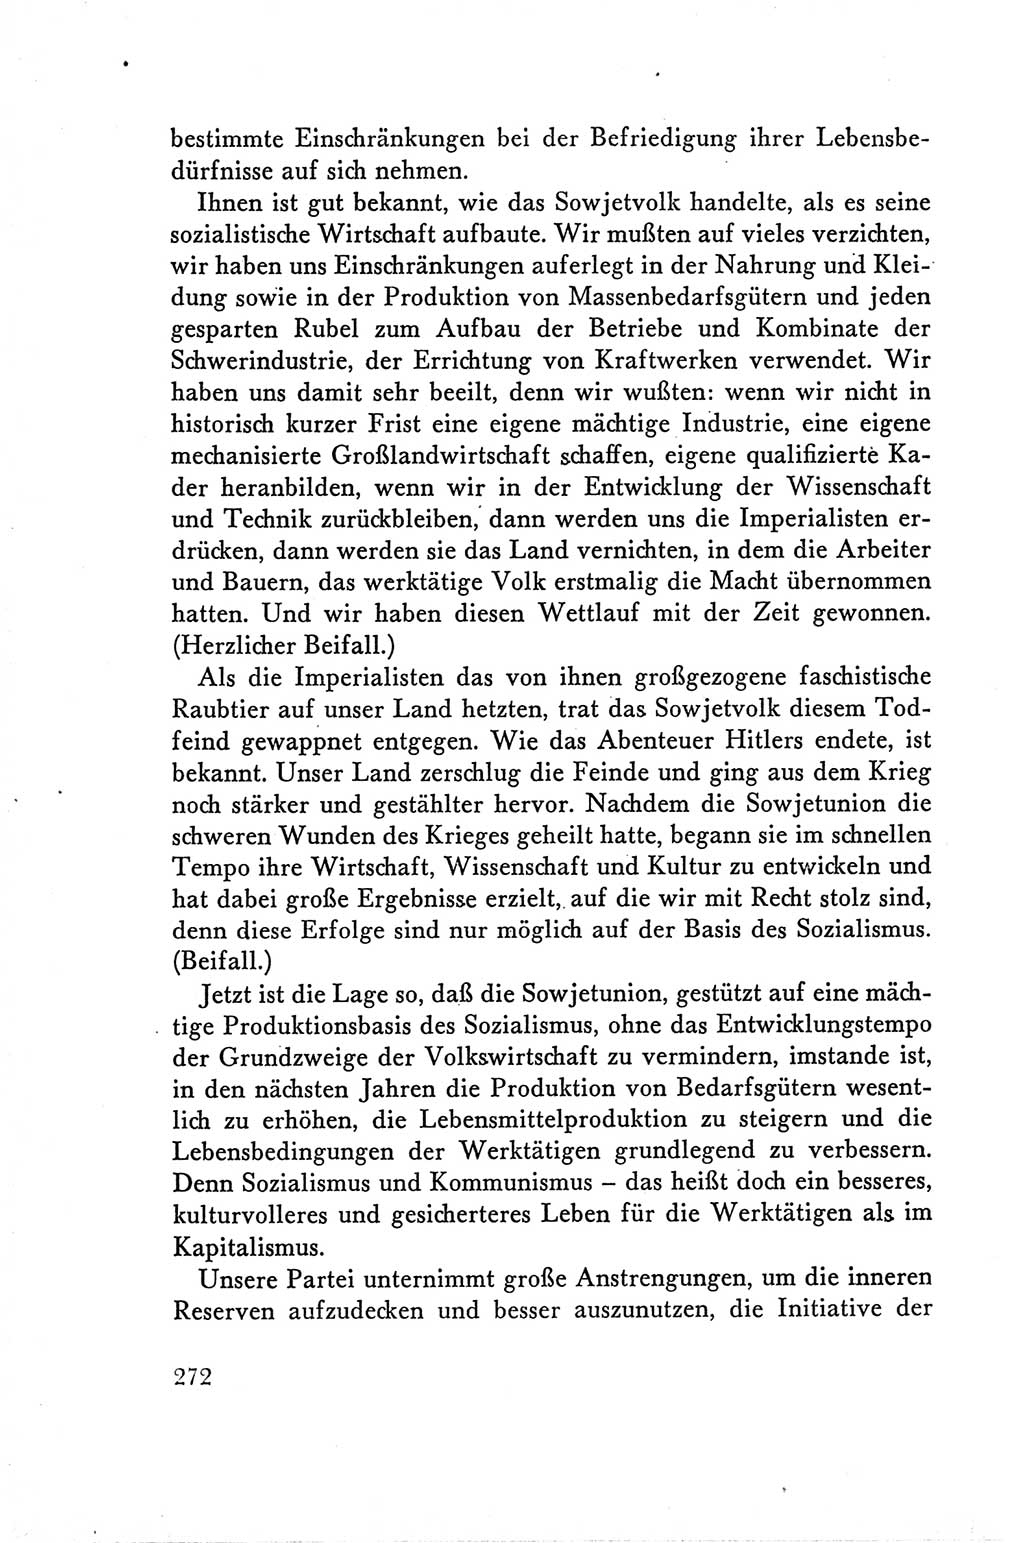 Protokoll der Verhandlungen des Ⅴ. Parteitages der Sozialistischen Einheitspartei Deutschlands (SED) [Deutsche Demokratische Republik (DDR)] 1958, Seite 272